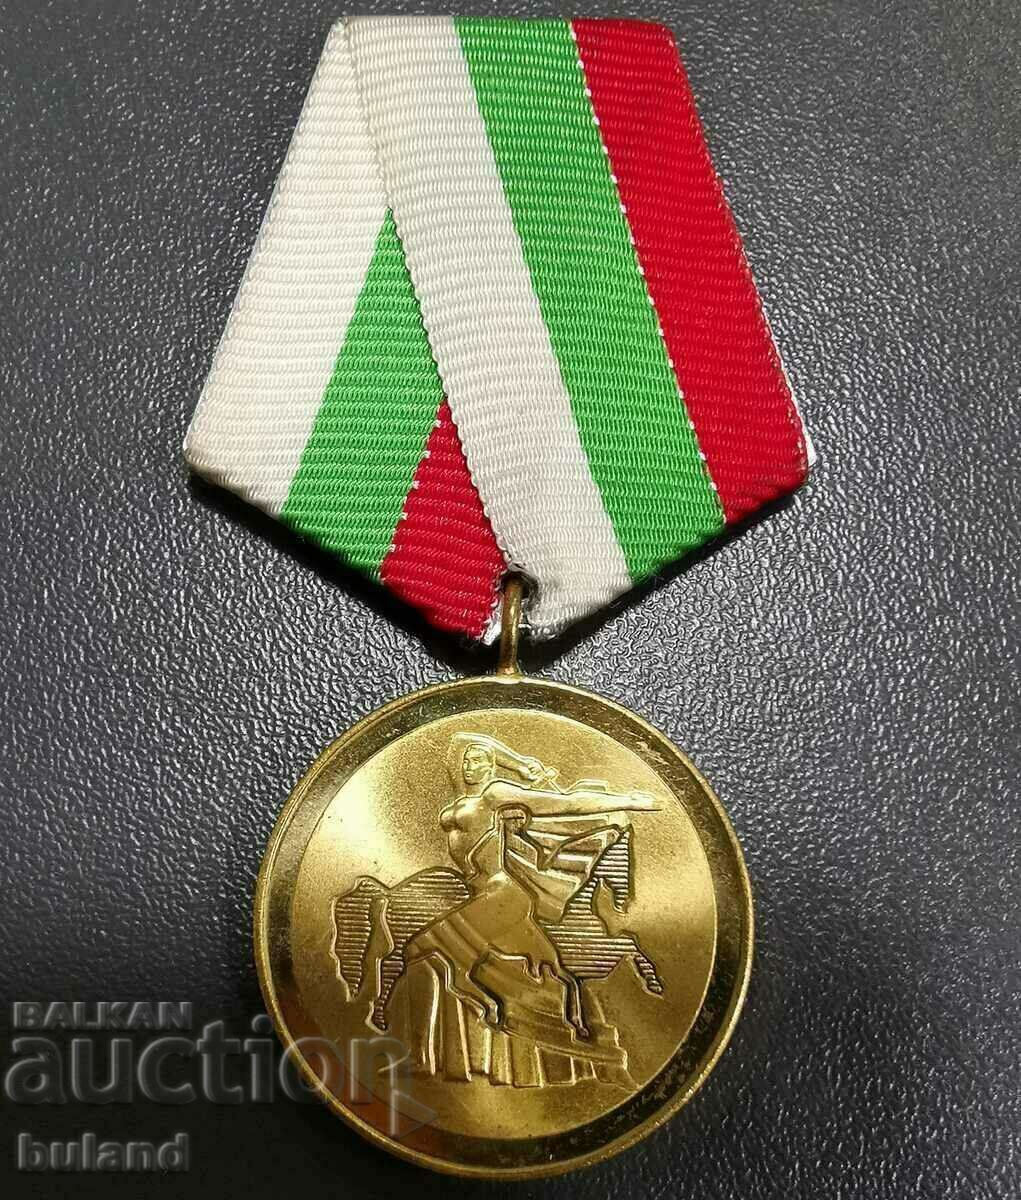 Български Соц Медал 1300 г България Републиката 1981